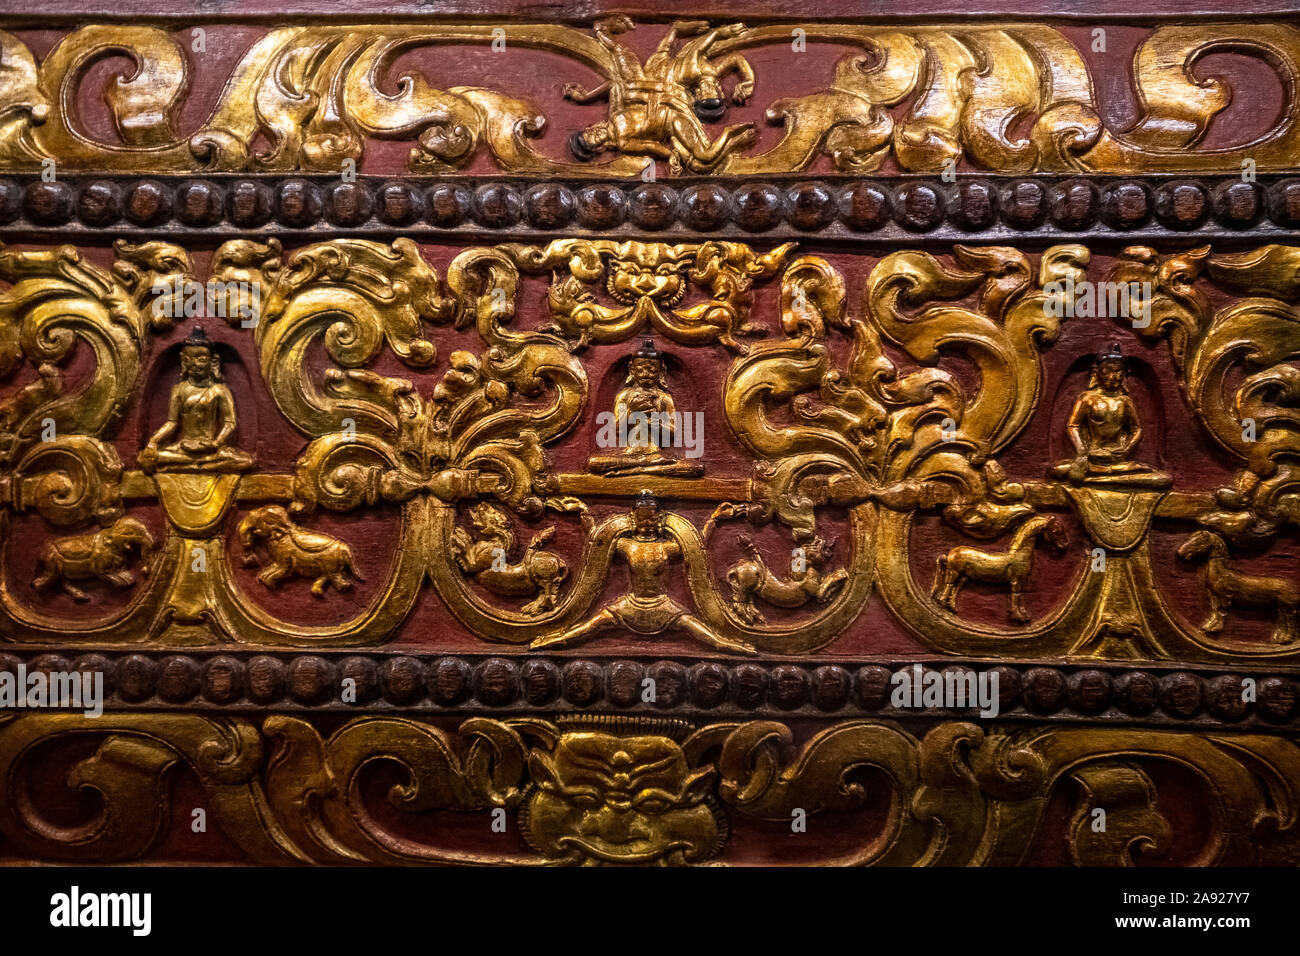 Italie Piémont Turin - Mazzonis Palace - Mao ( Musée Museo d'Arte Orientale ) - Musée d'art oriental - Frontispieces - dans le plus précieux de la main le Canon deux élément sont important : le Frontespices et la couverture en bois Banque D'Images